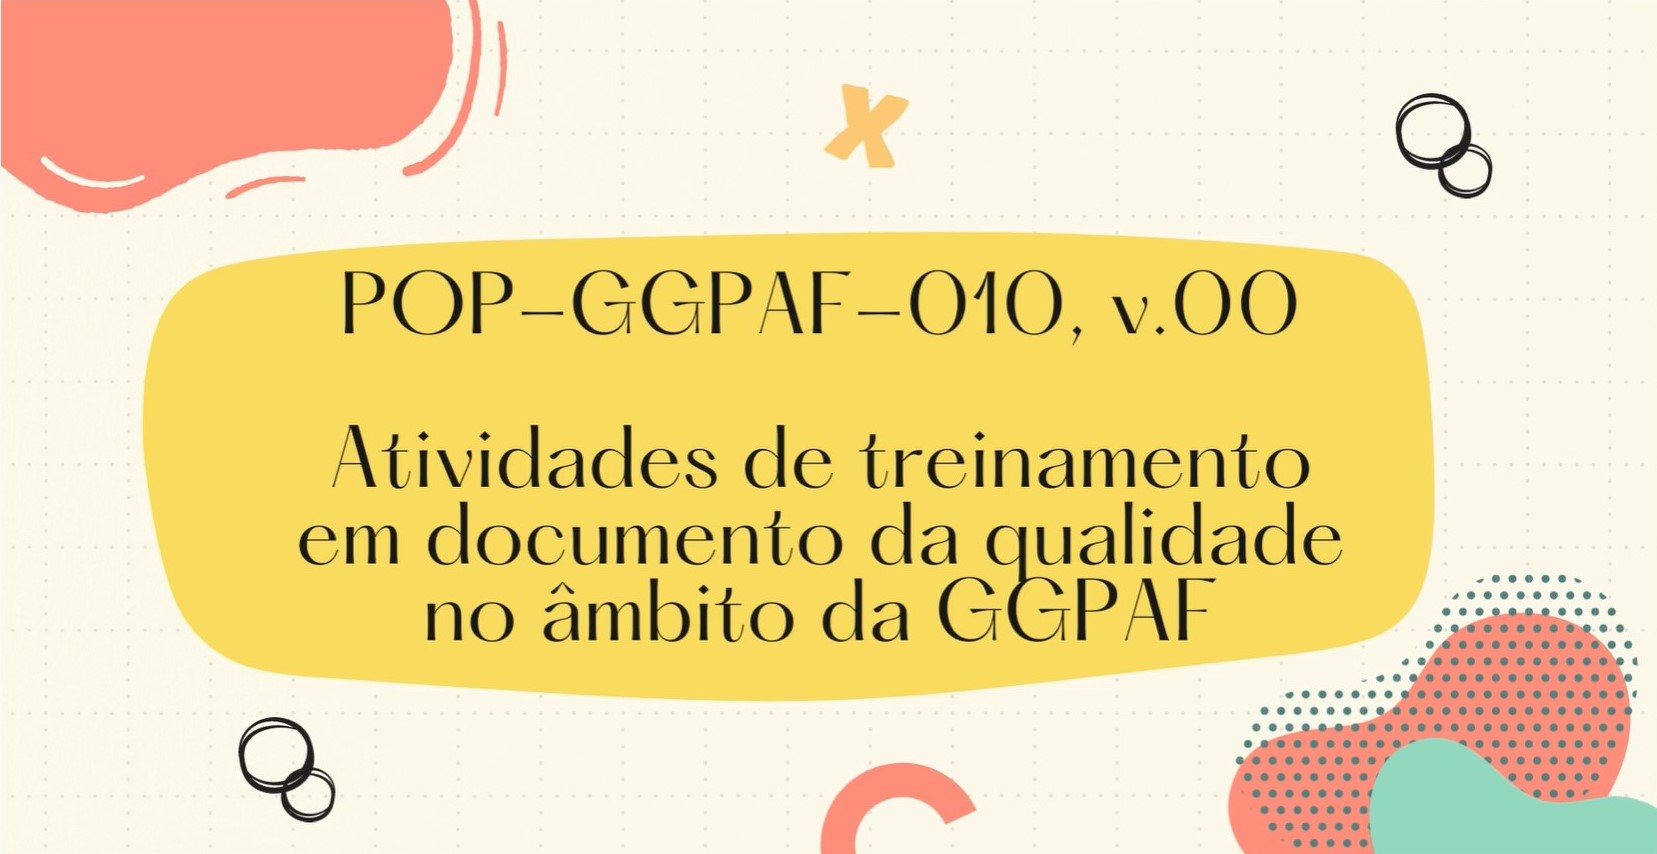 POP-GGPAF-010 - ATIVIDADES DE TREINAMENTO EM DOCUMENTOS DA QUALIDADE NO ÂMBITO DA GGPAF, v.00